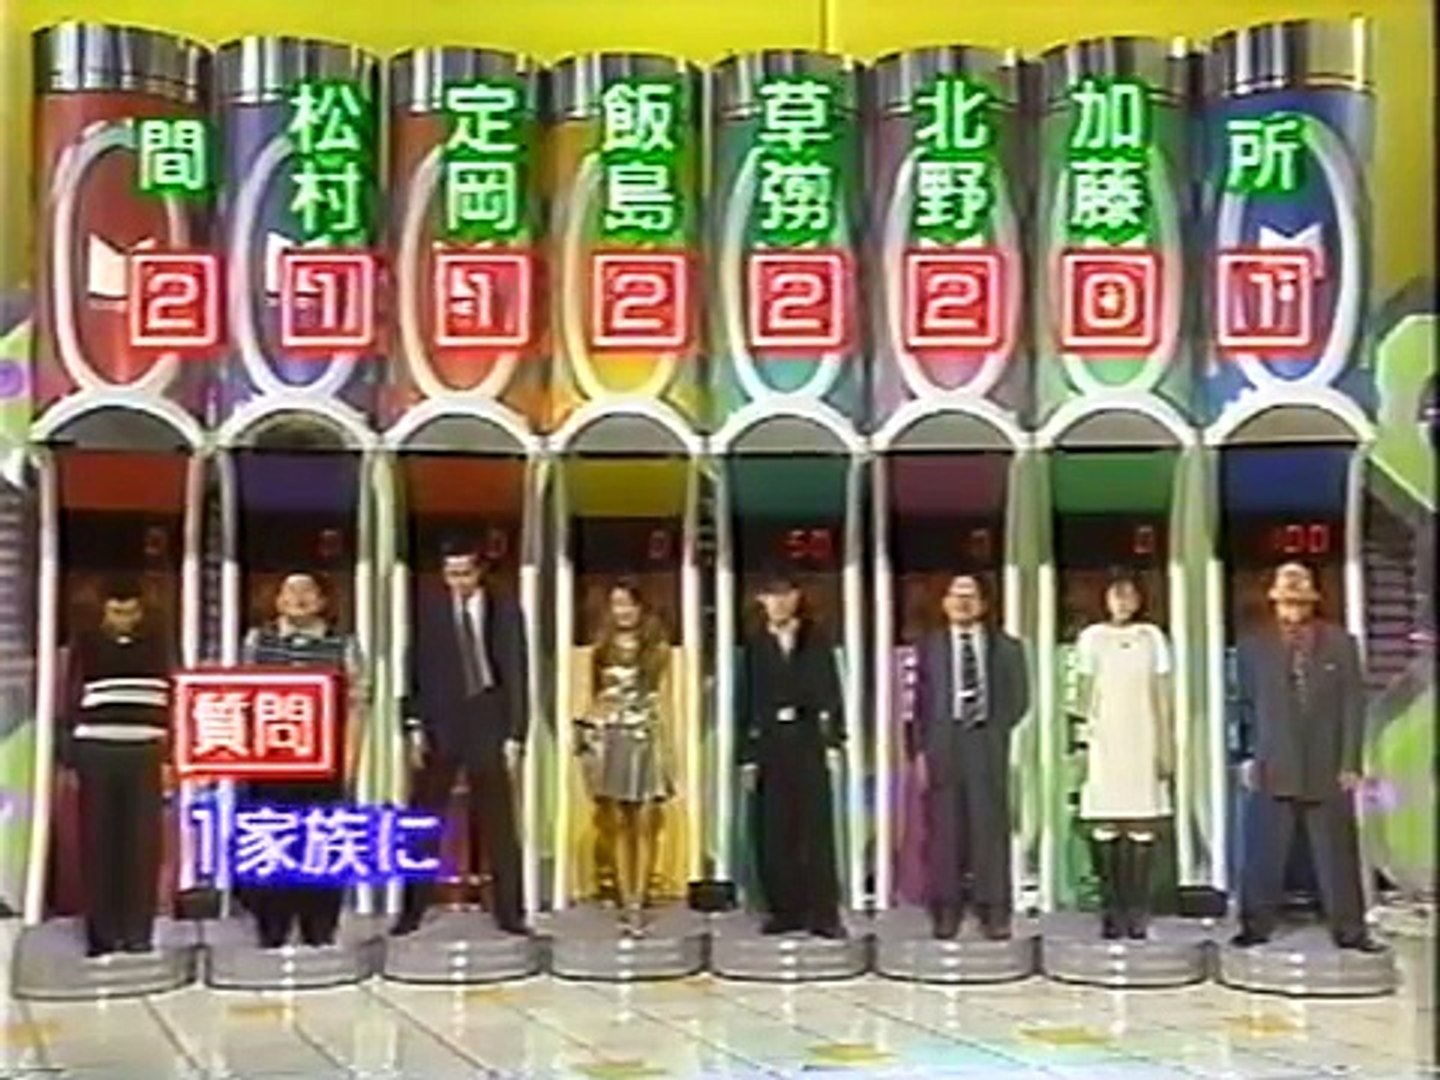 マジカル頭脳パワー 1995年10月26日放送 Video Dailymotion